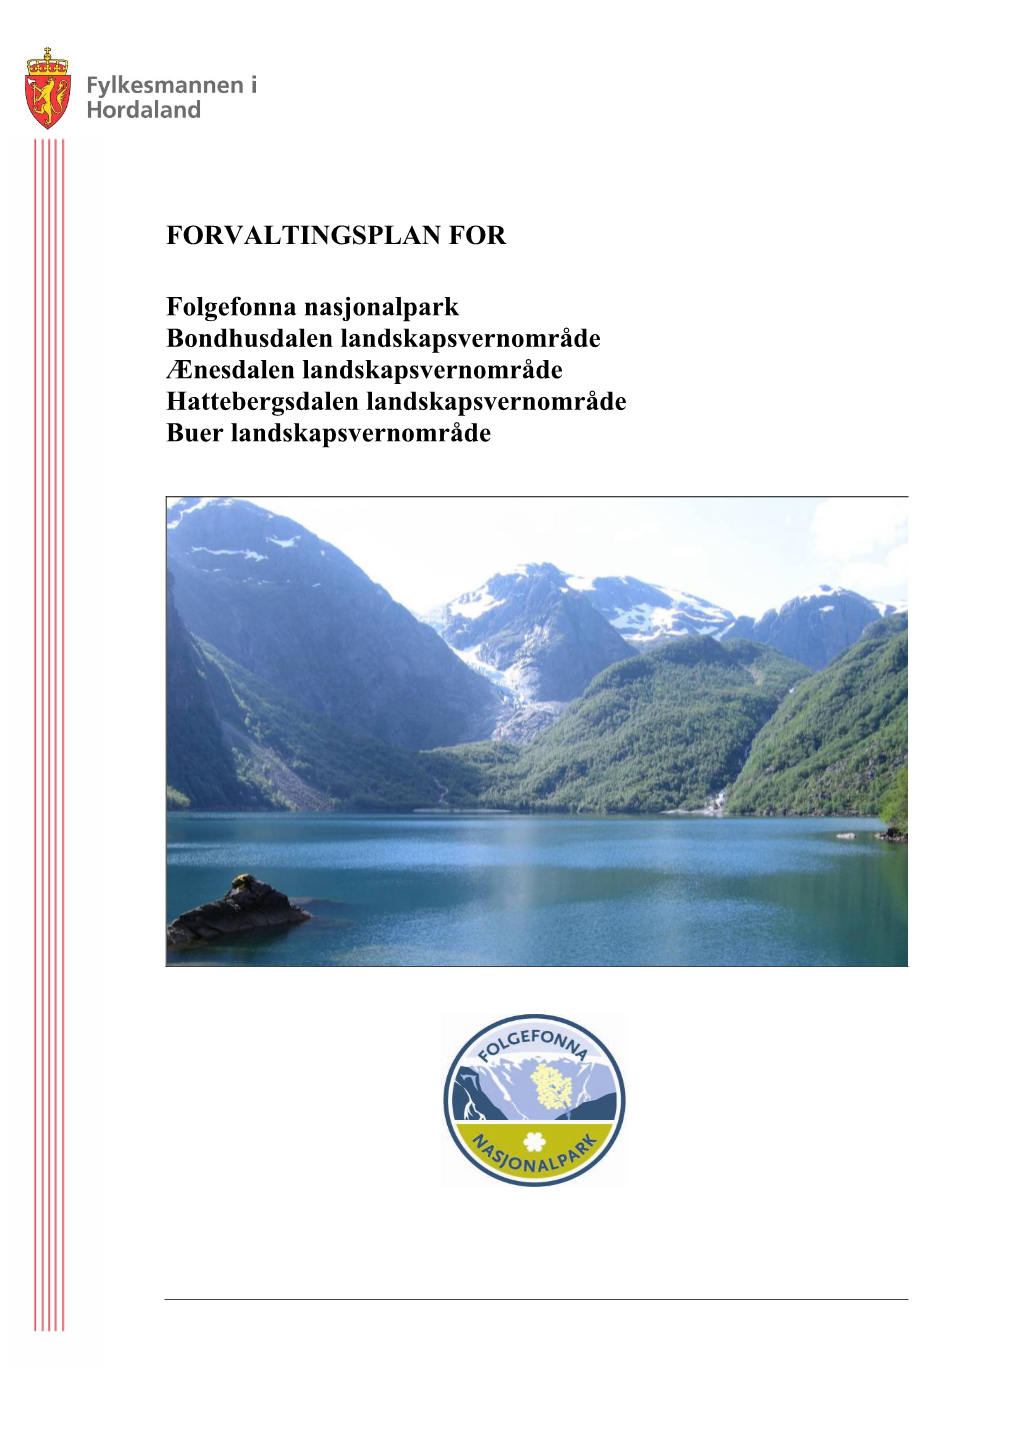 Forvaltingsplan for Folgefonna Nasjonalpark